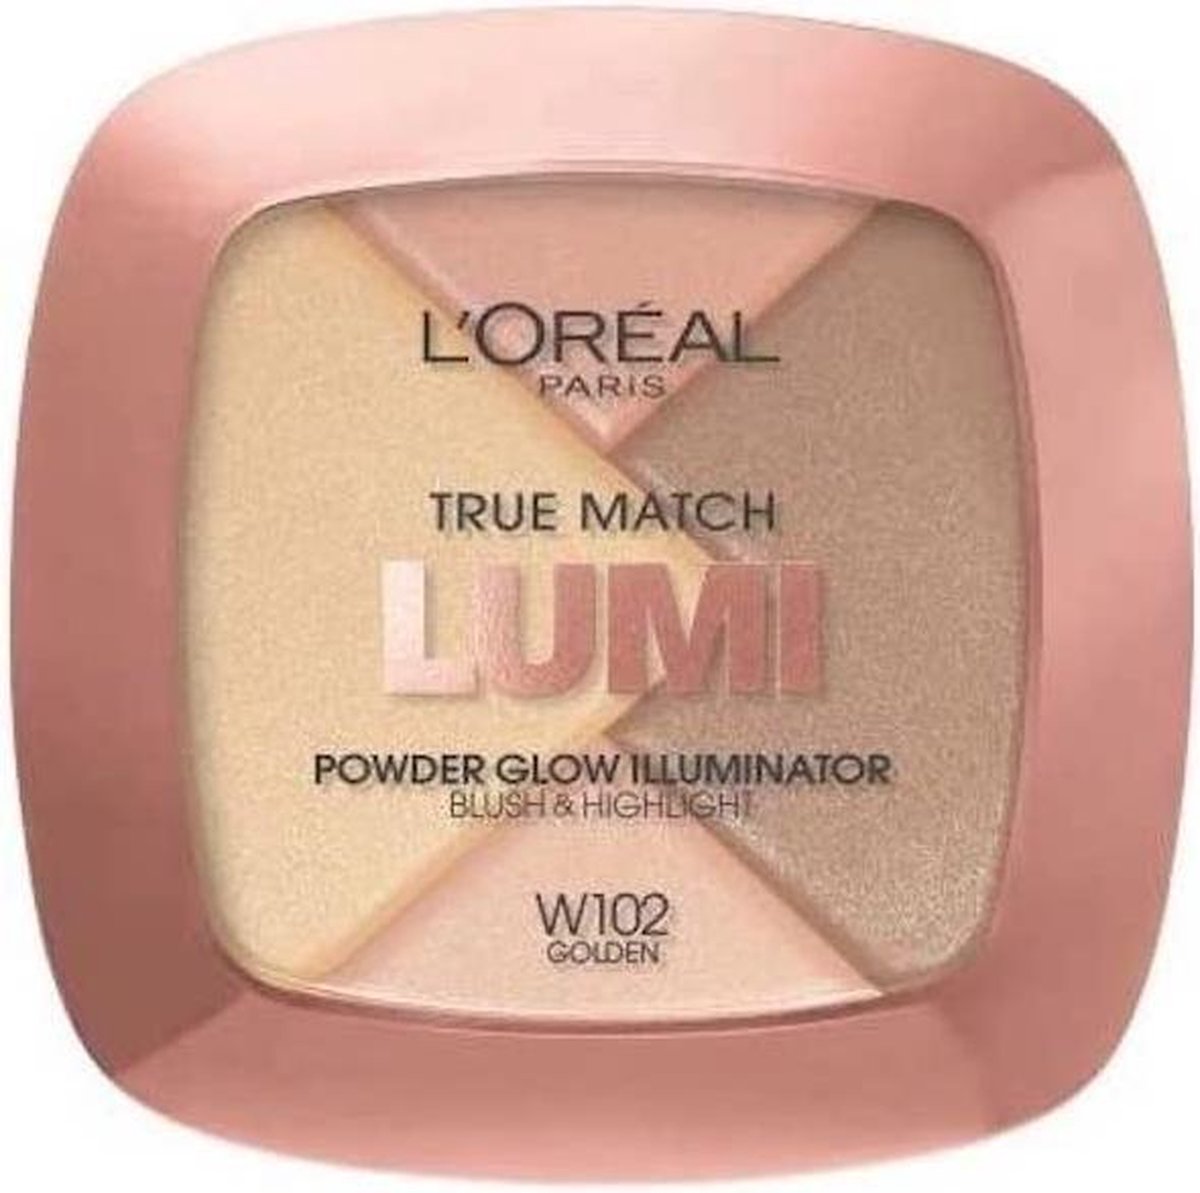 L'Oréal Paris True Match Lumi poudre Glow Illuminateur - Golden W102 - L’Oréal Paris